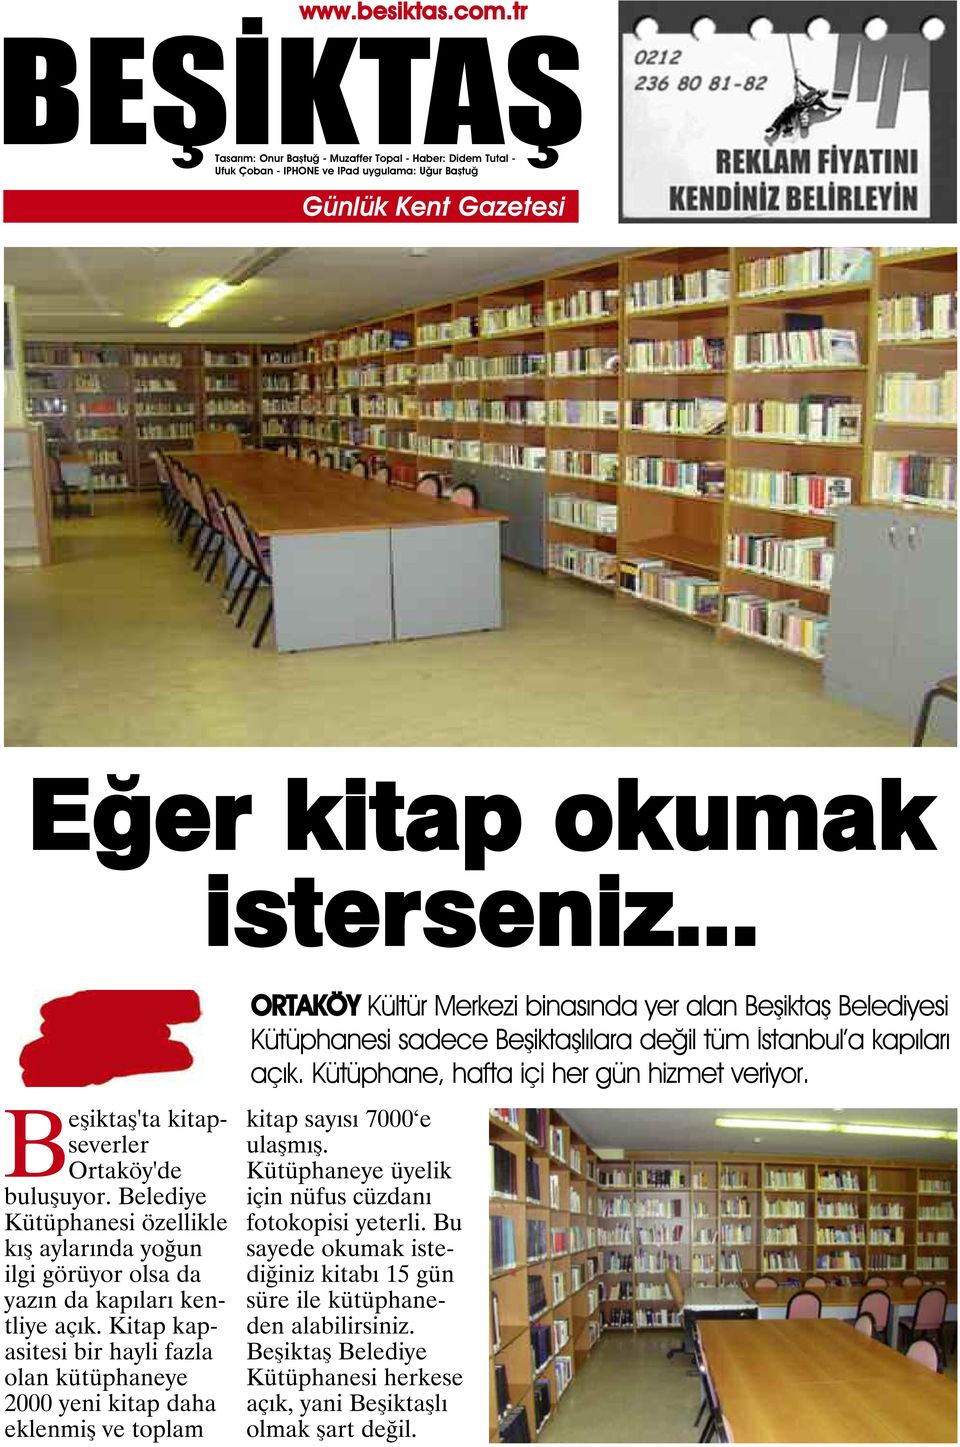 Kitap kapasitesi bir hayli fazla olan kütüphaneye 2000 yeni kitap daha eklenmiş ve toplam ORTAKÖY Kültür Merkezi binasında yer alan Beşiktaş Belediyesi Kütüphanesi sadece